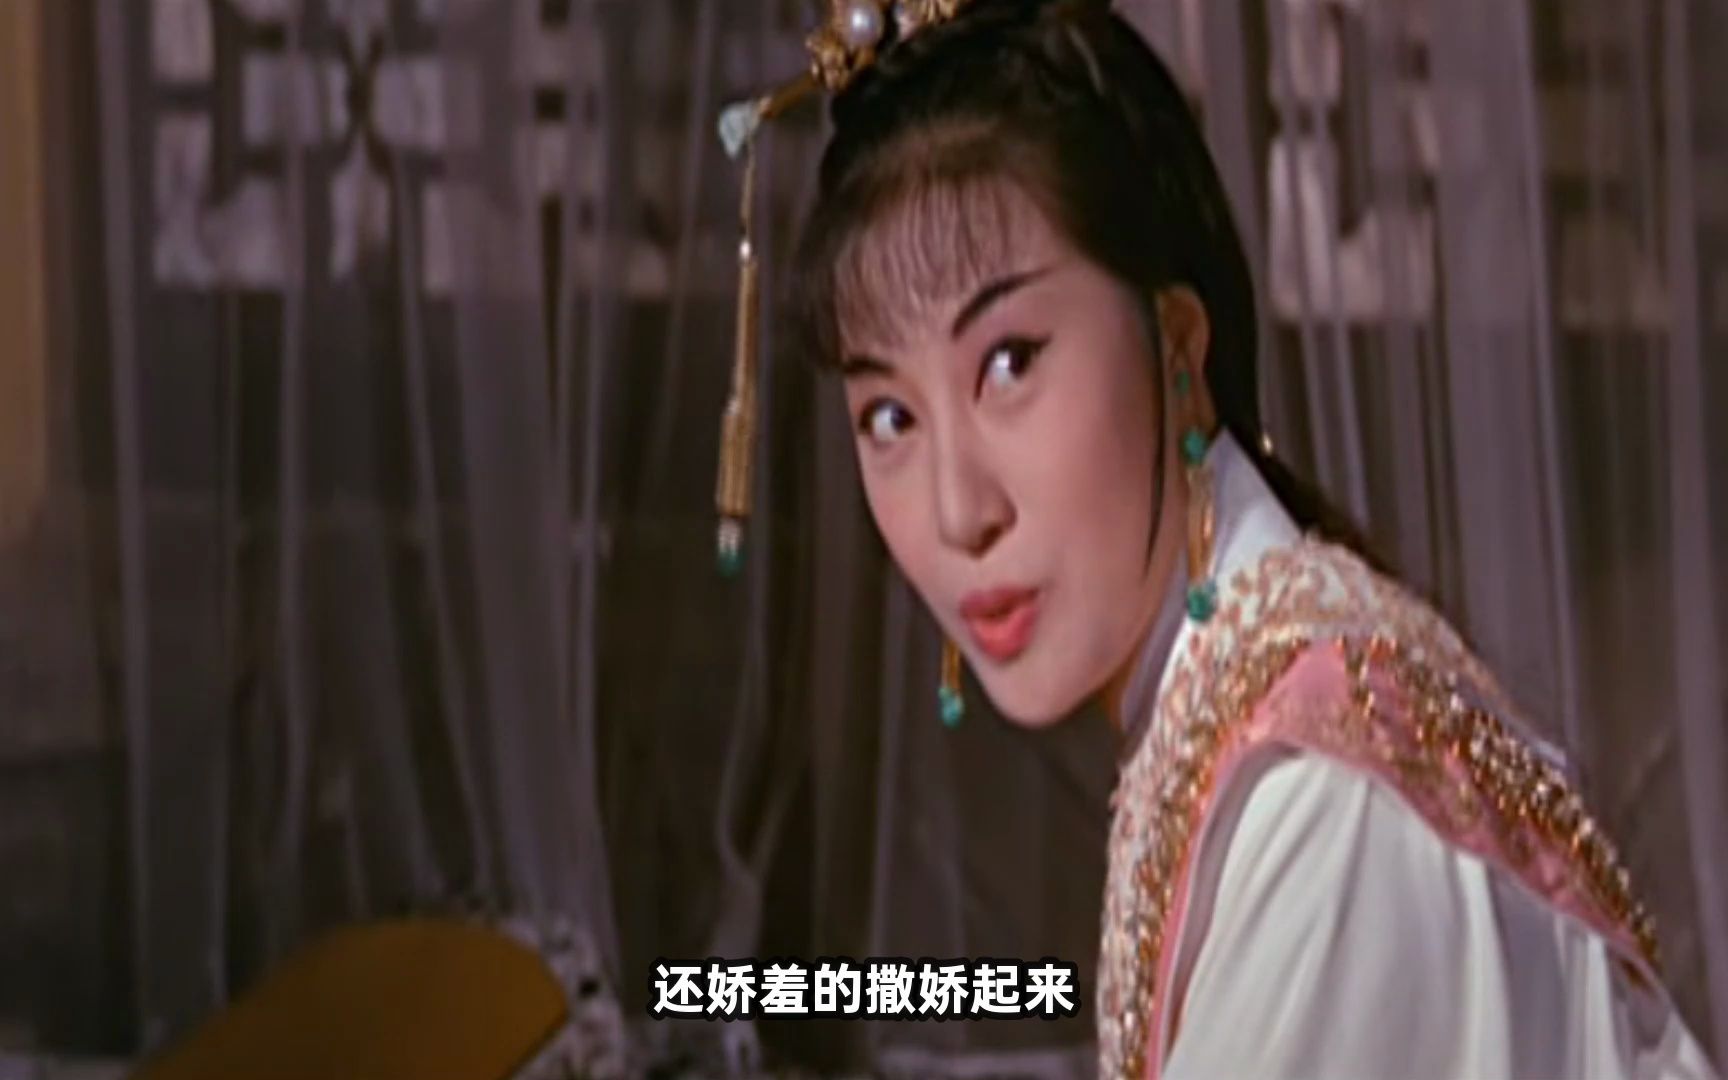 1966年邵氏版西游记 铁扇公主太撩人 郑佩佩饰演白骨精你看过吗